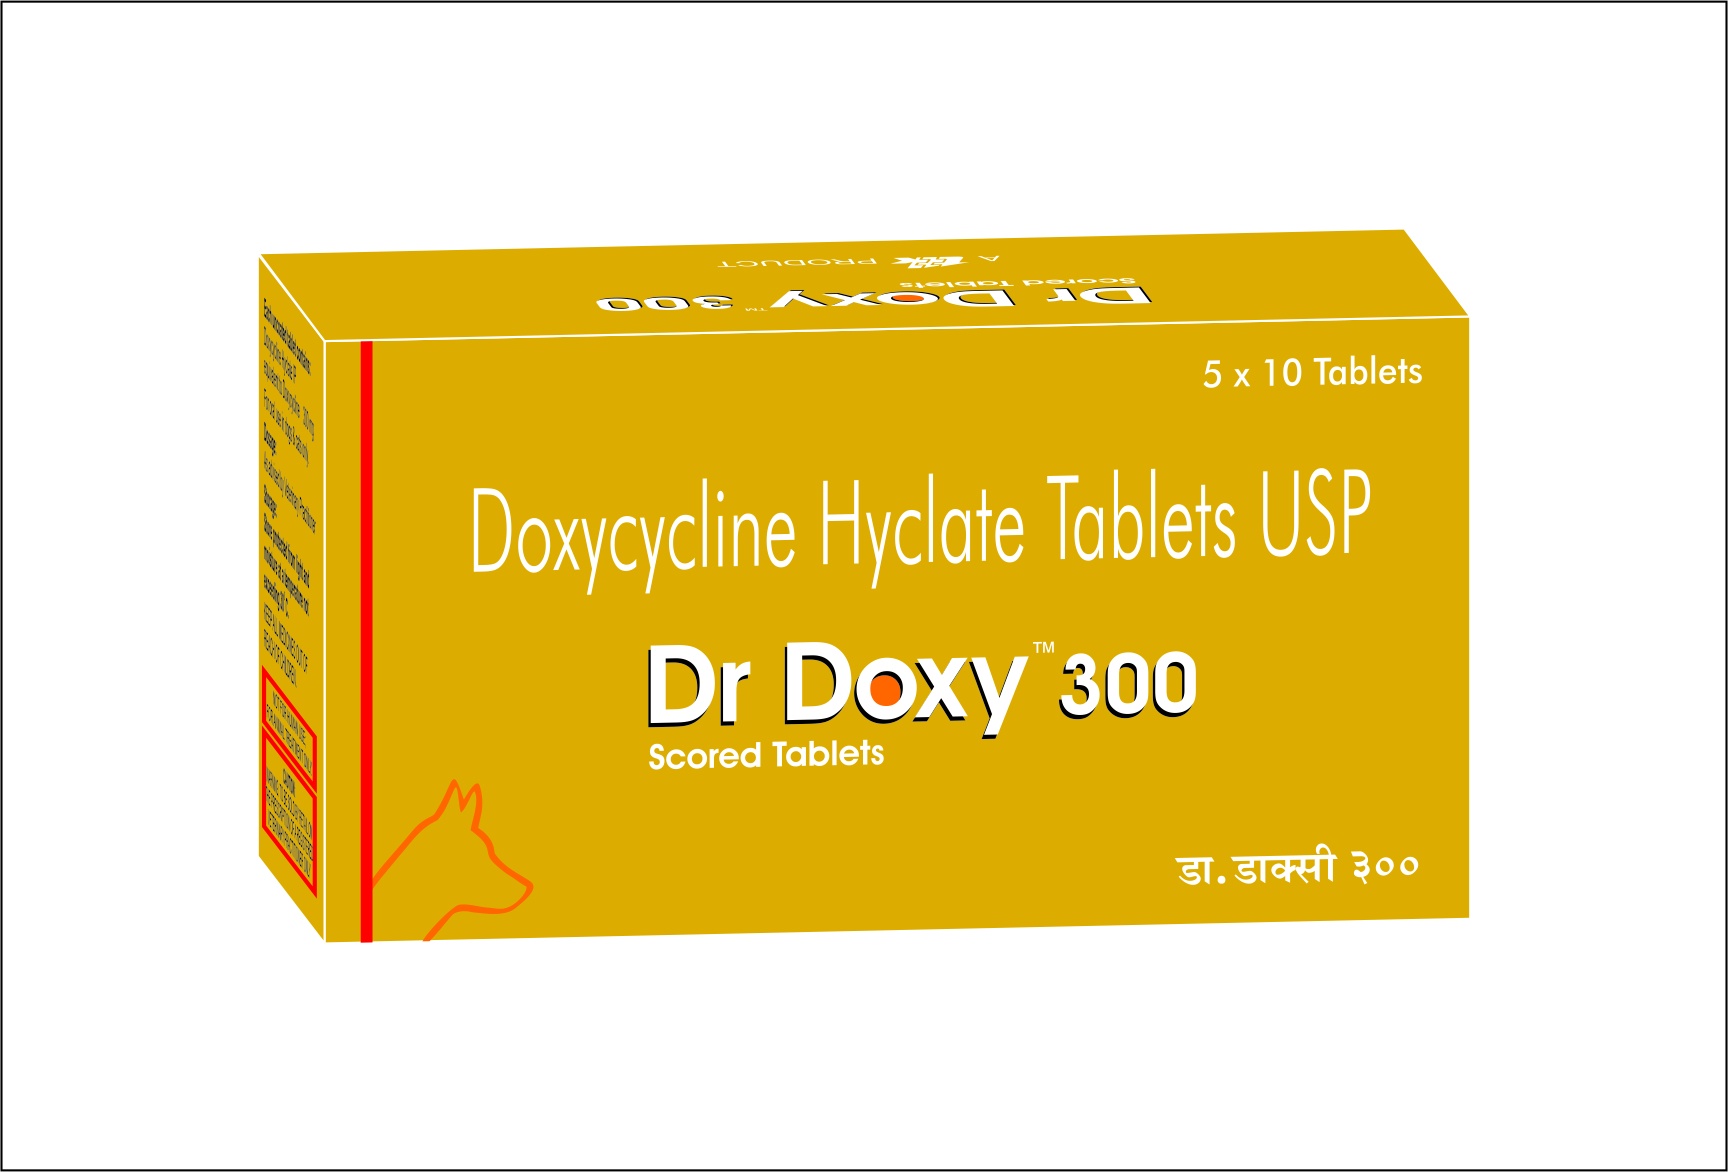 Dr. Doxy 300